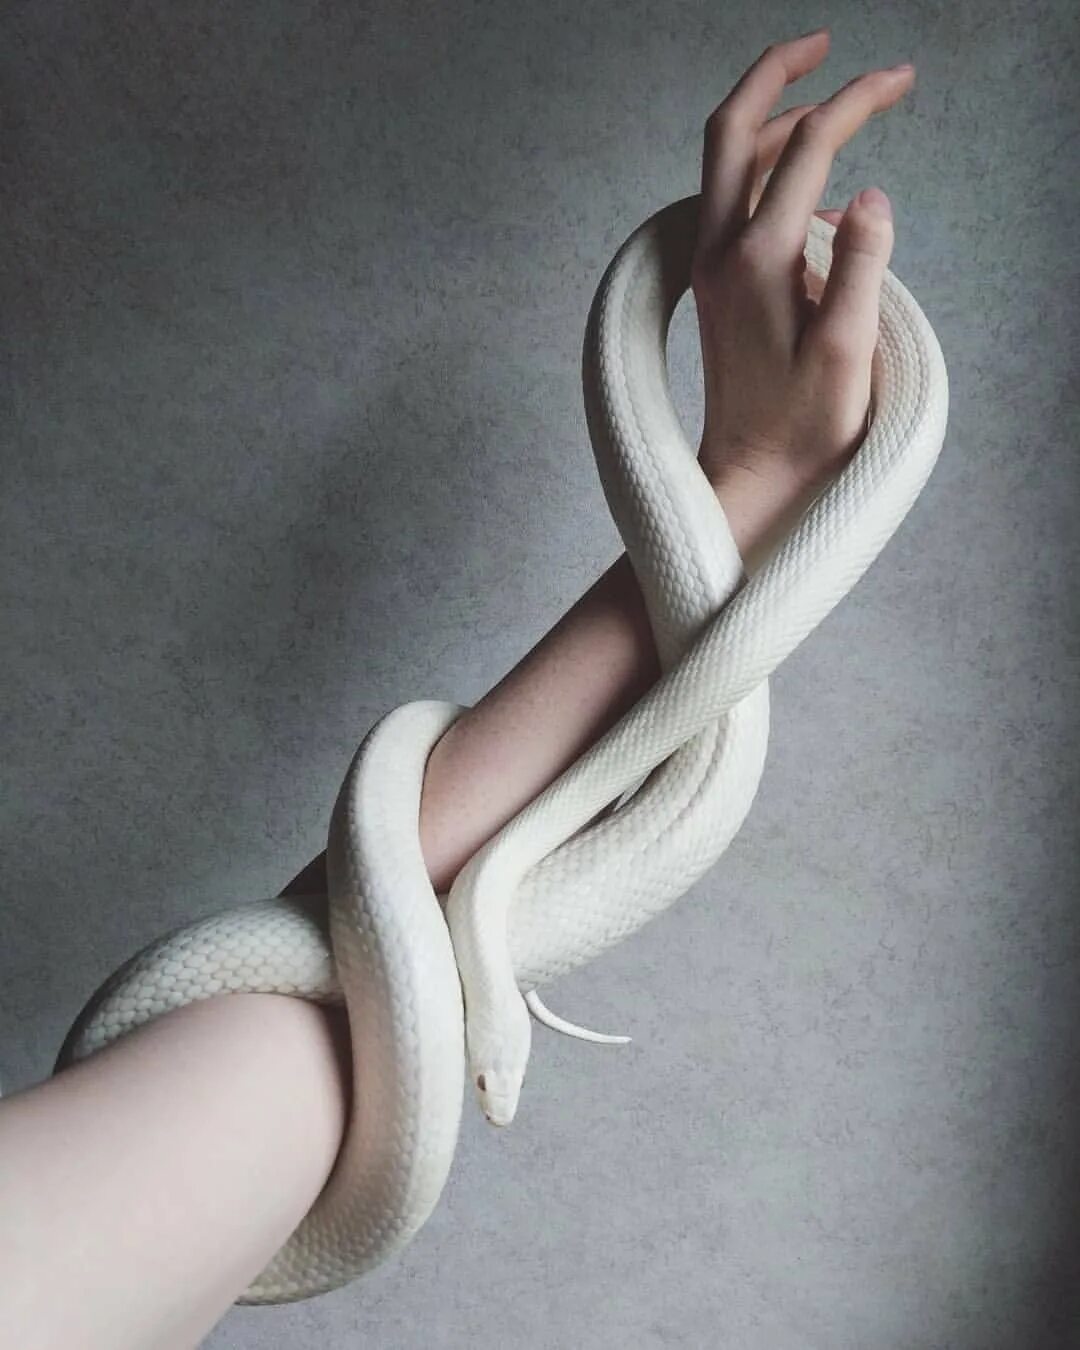 Змея Эстетика. Змея обвивает руку. Белая змея Эстетика. Красивые домашние змеи. Сон змея обвивает